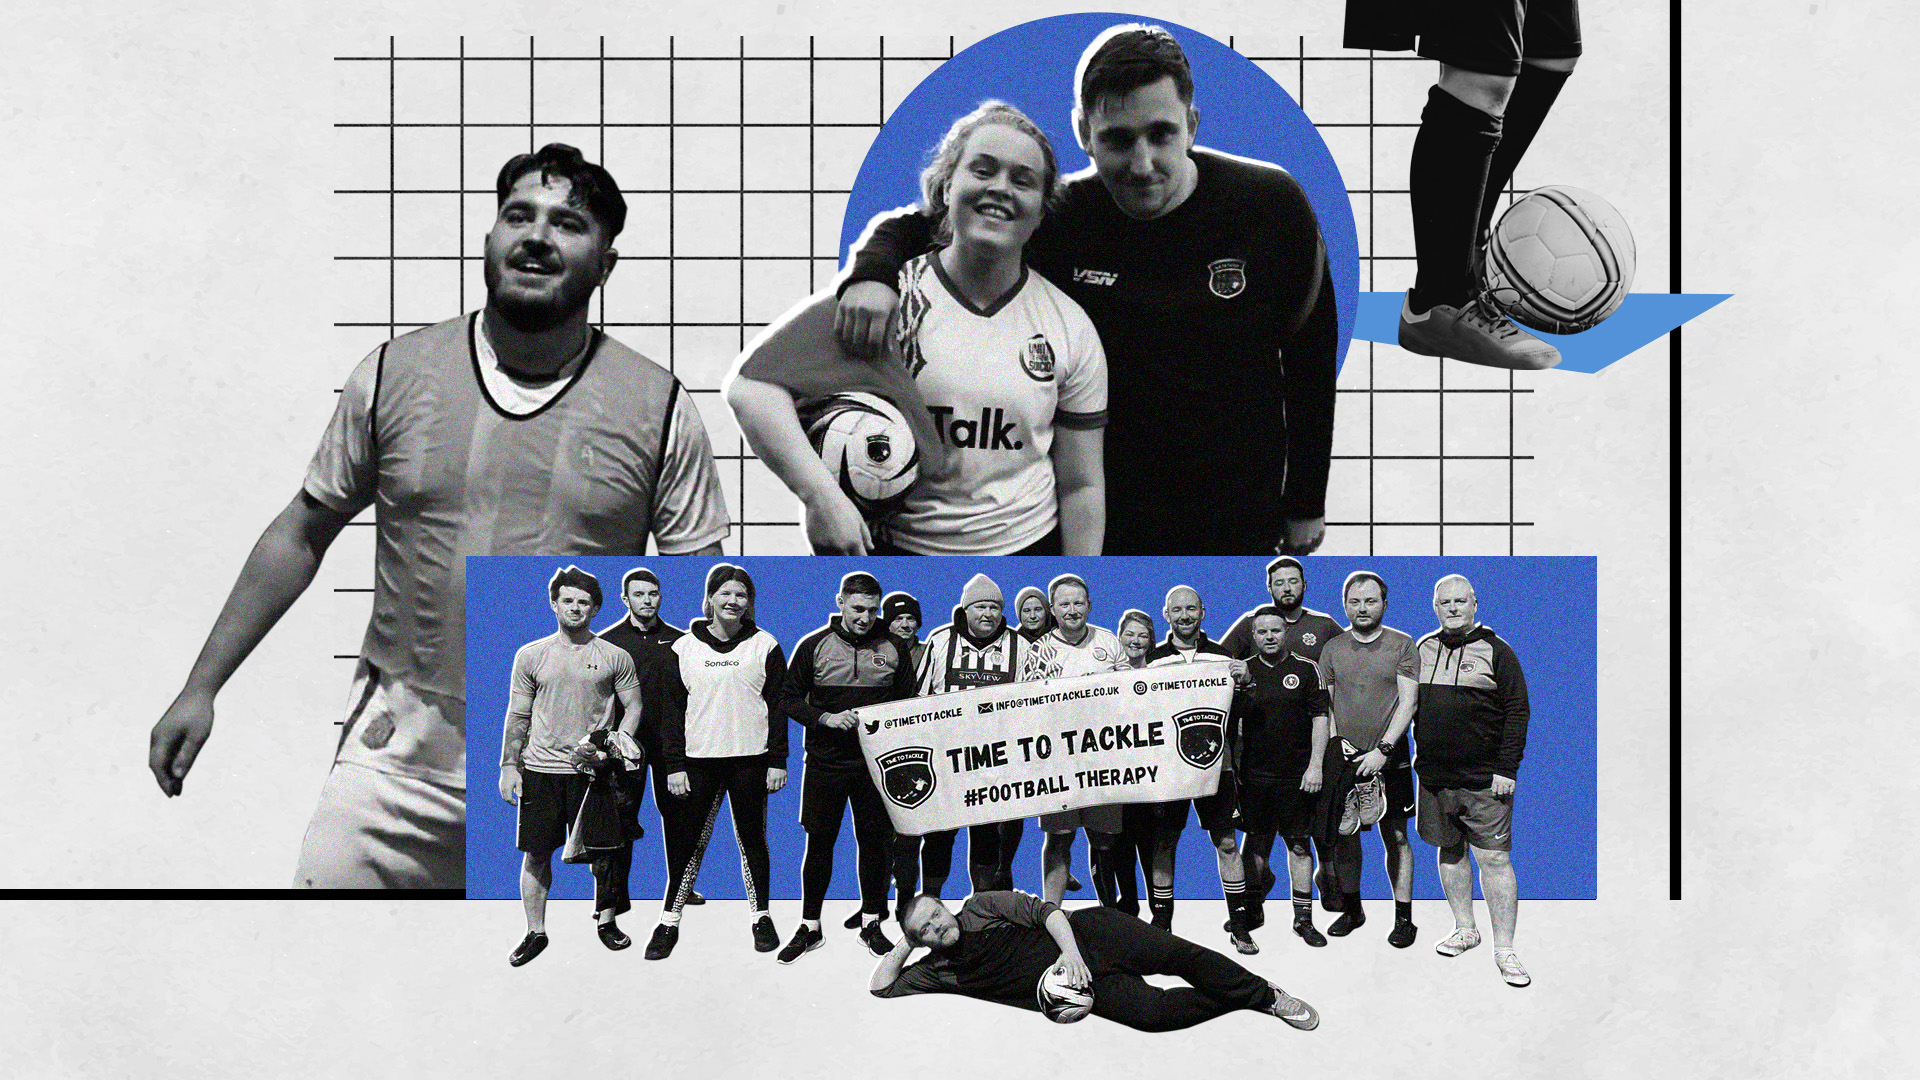 Terapia de fútbol: cómo es la iniciativa de salud mental premiada por el primer ministro británico Boris Johnson y por la UEFA